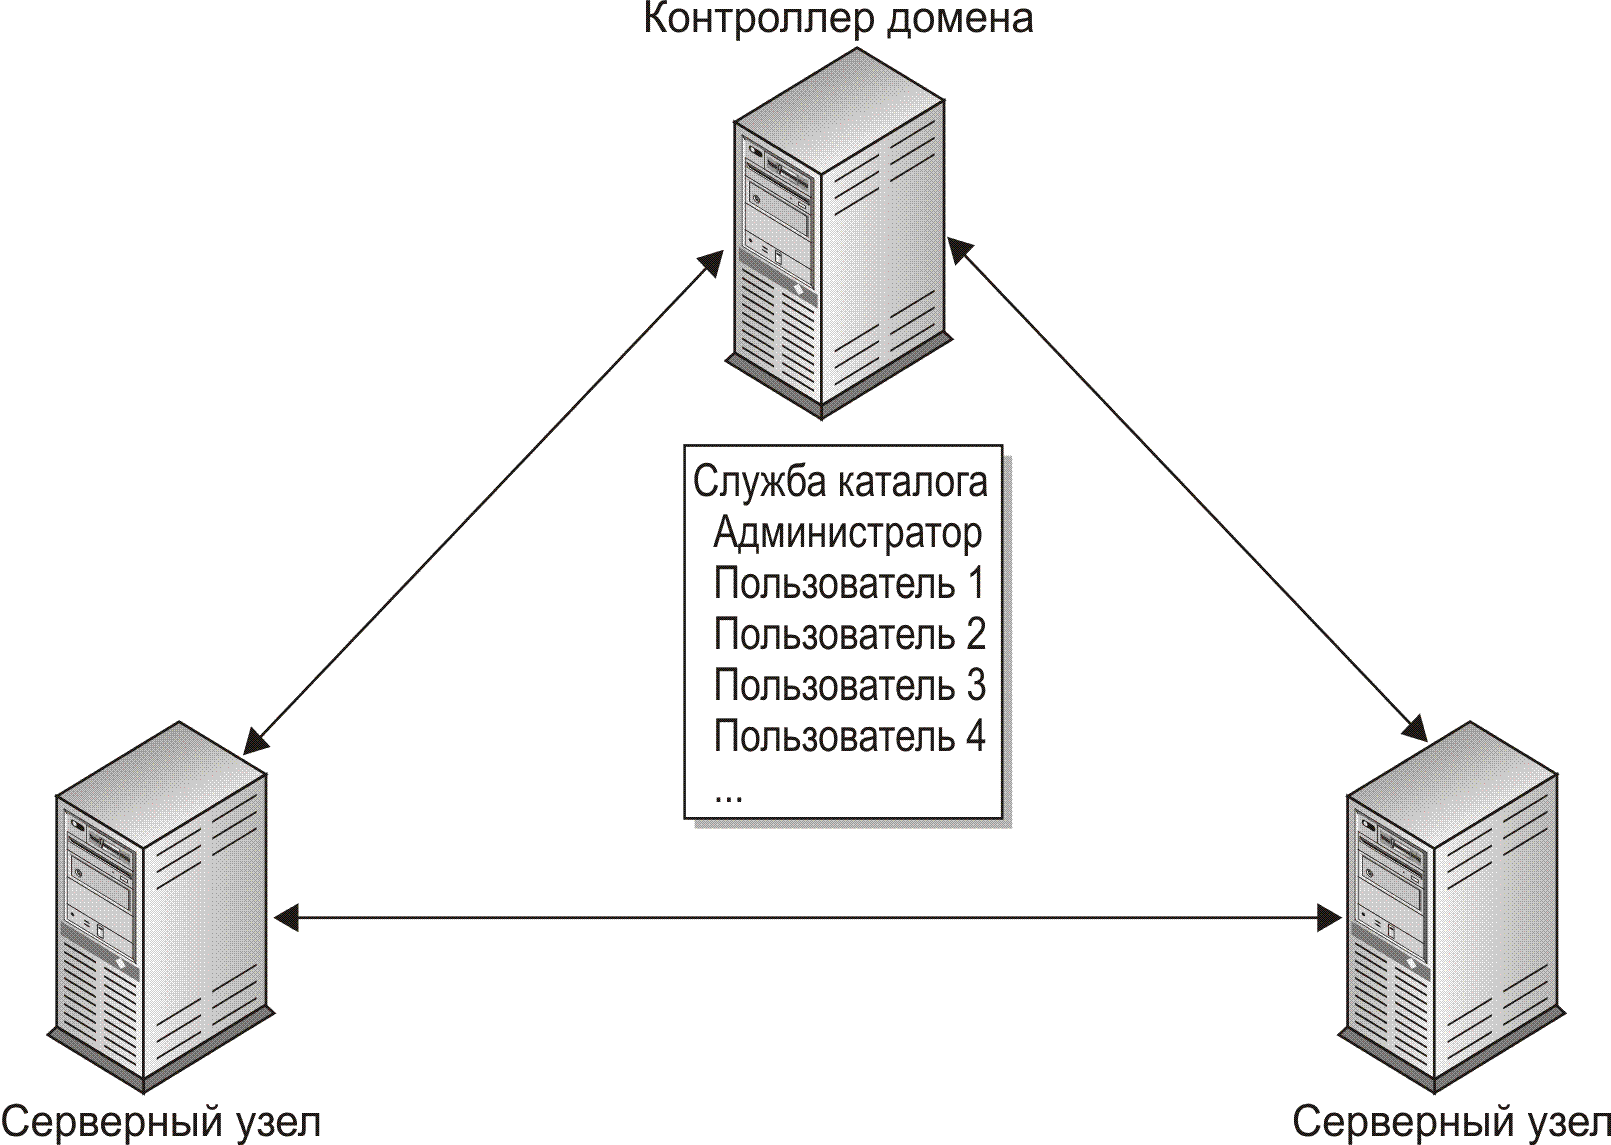 Сервер домена. Контроллер домена схема. Контроллер домена Active Directory. Контроллер домена на виндовс сервер. Структура контроллера домена.